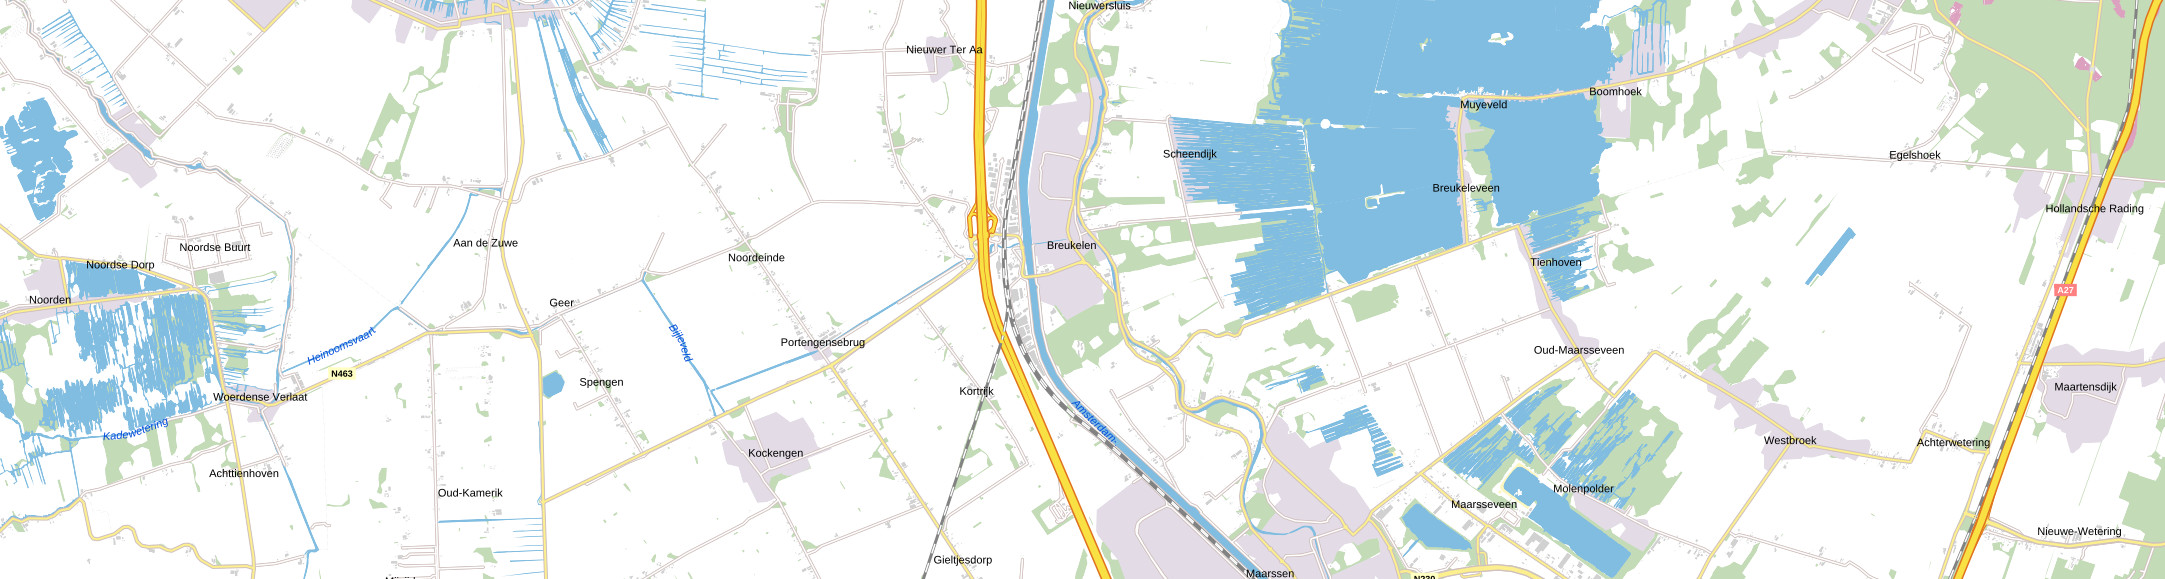 5. Marskramerpad Rijnsaterwoude – Noorden – Breukelen – Hollandsche Rading: Hans Schoenmakers (34 km)